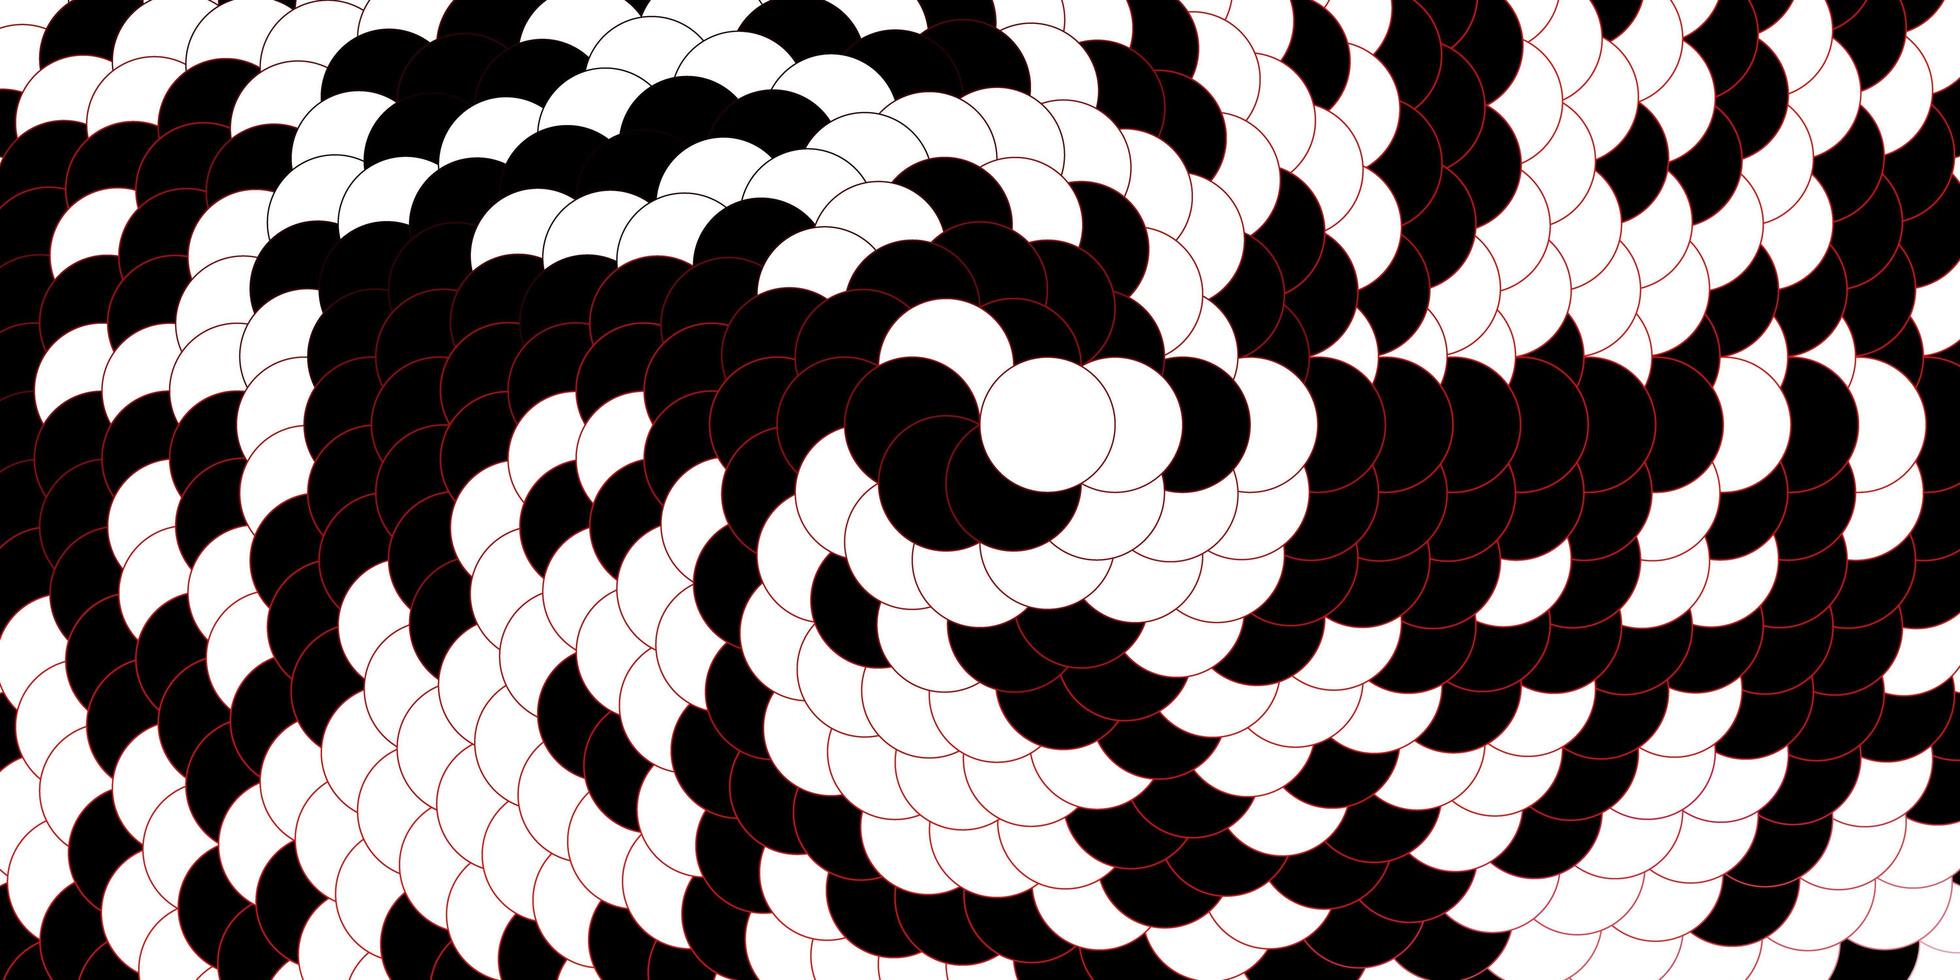 modèle vectoriel rouge foncé avec des cercles. illustration avec un ensemble de sphères abstraites colorées brillantes. motif pour papiers peints, rideaux.